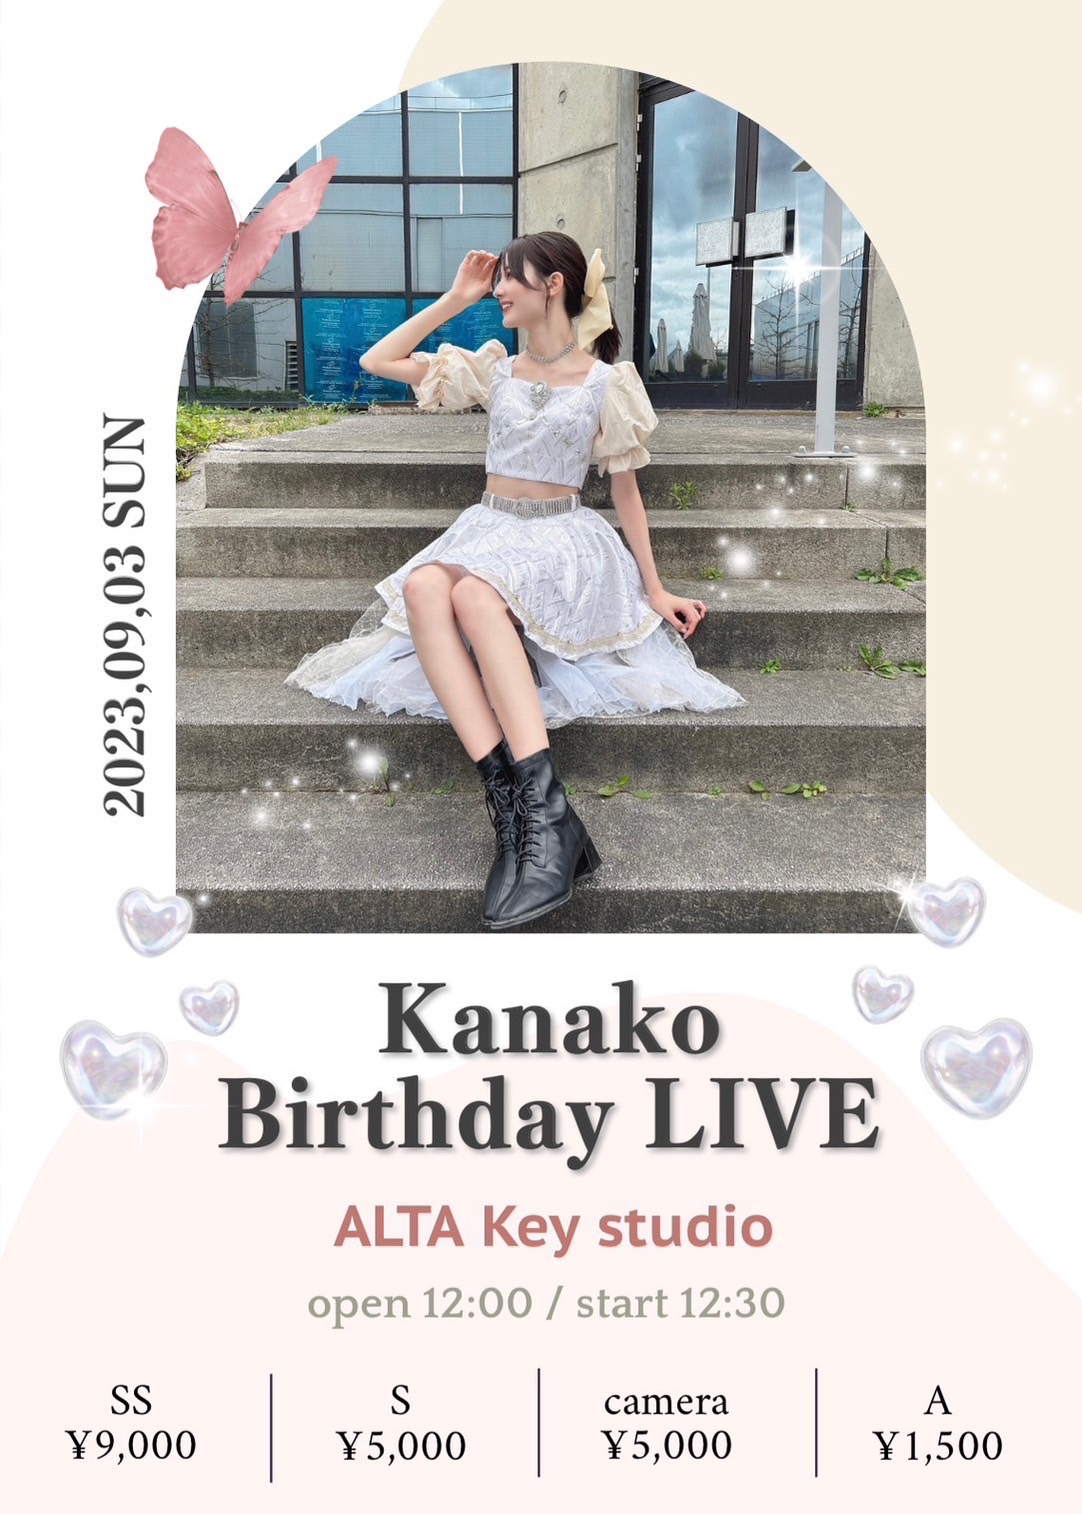 Kanako Birthday LIVE